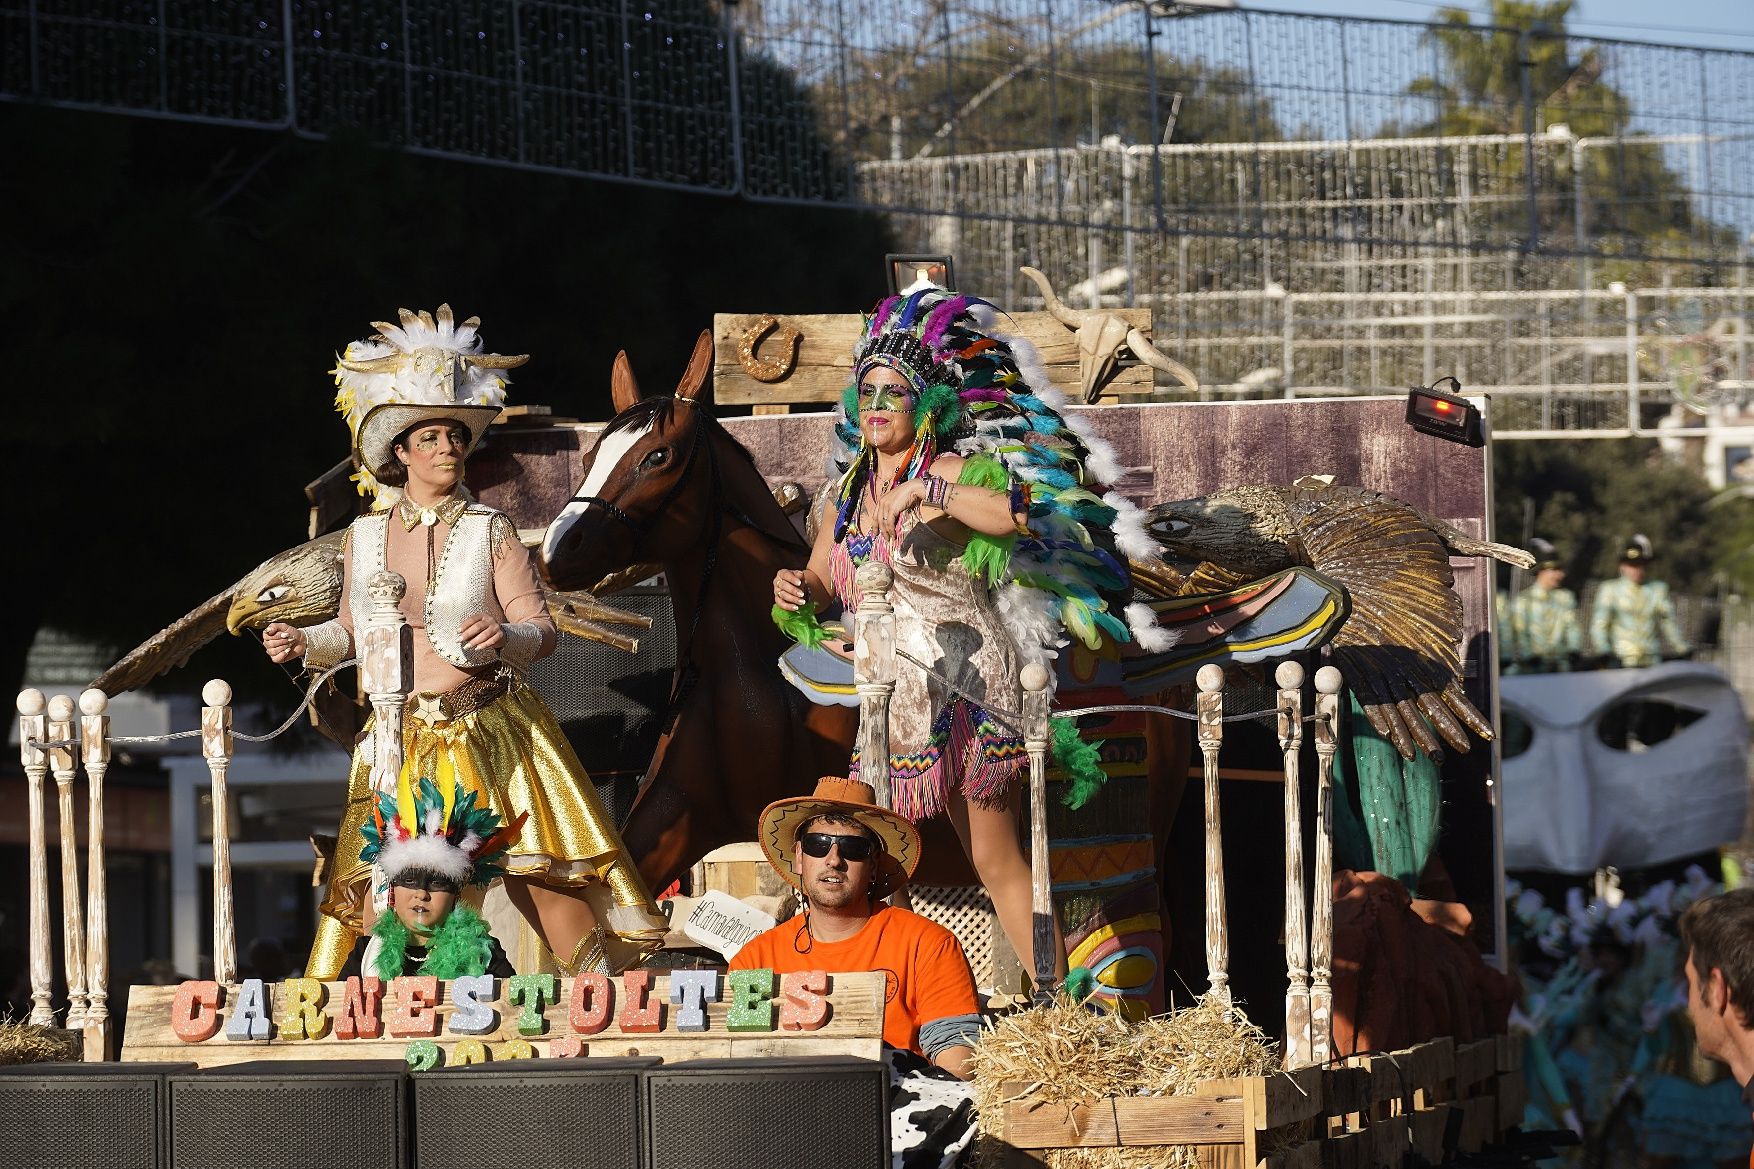 Les millors imatges de la gran rua de Carnaval de Platja d'Aro